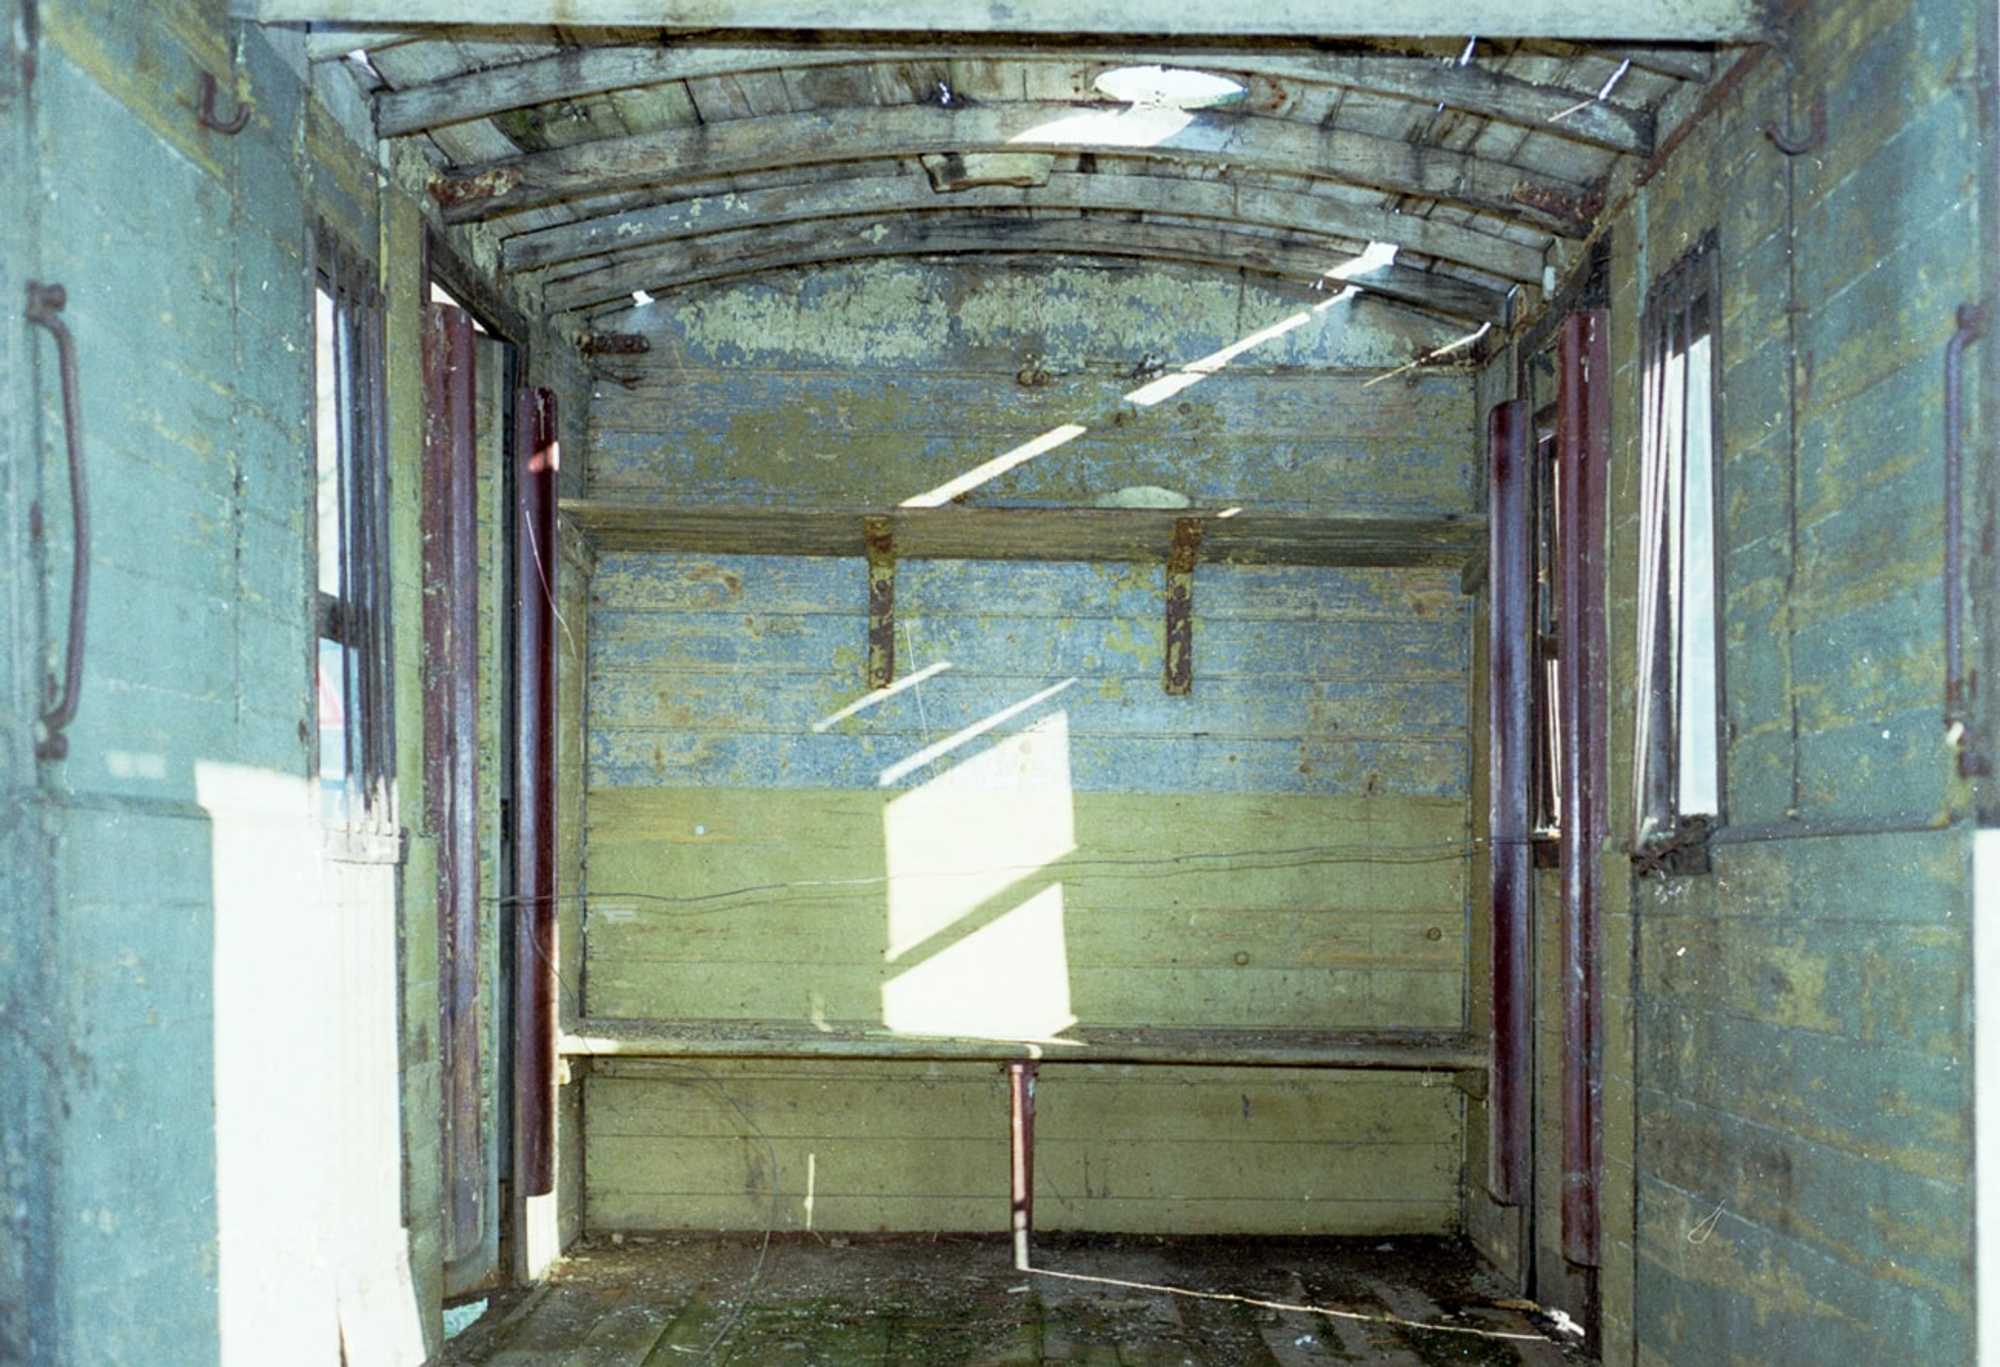 Dieses Bildpärchen zeigt das ehemalige Postabteil des vierachsigen Pollo-Wagens 976-101. Die bei der Bergung des Wagenkastens im Jahr 1994 noch vorhandene originale Sitzbank aus den letzten Einsatzjahrzehnten entstand beim Neubau des Aufbaus ebenfalls neu.